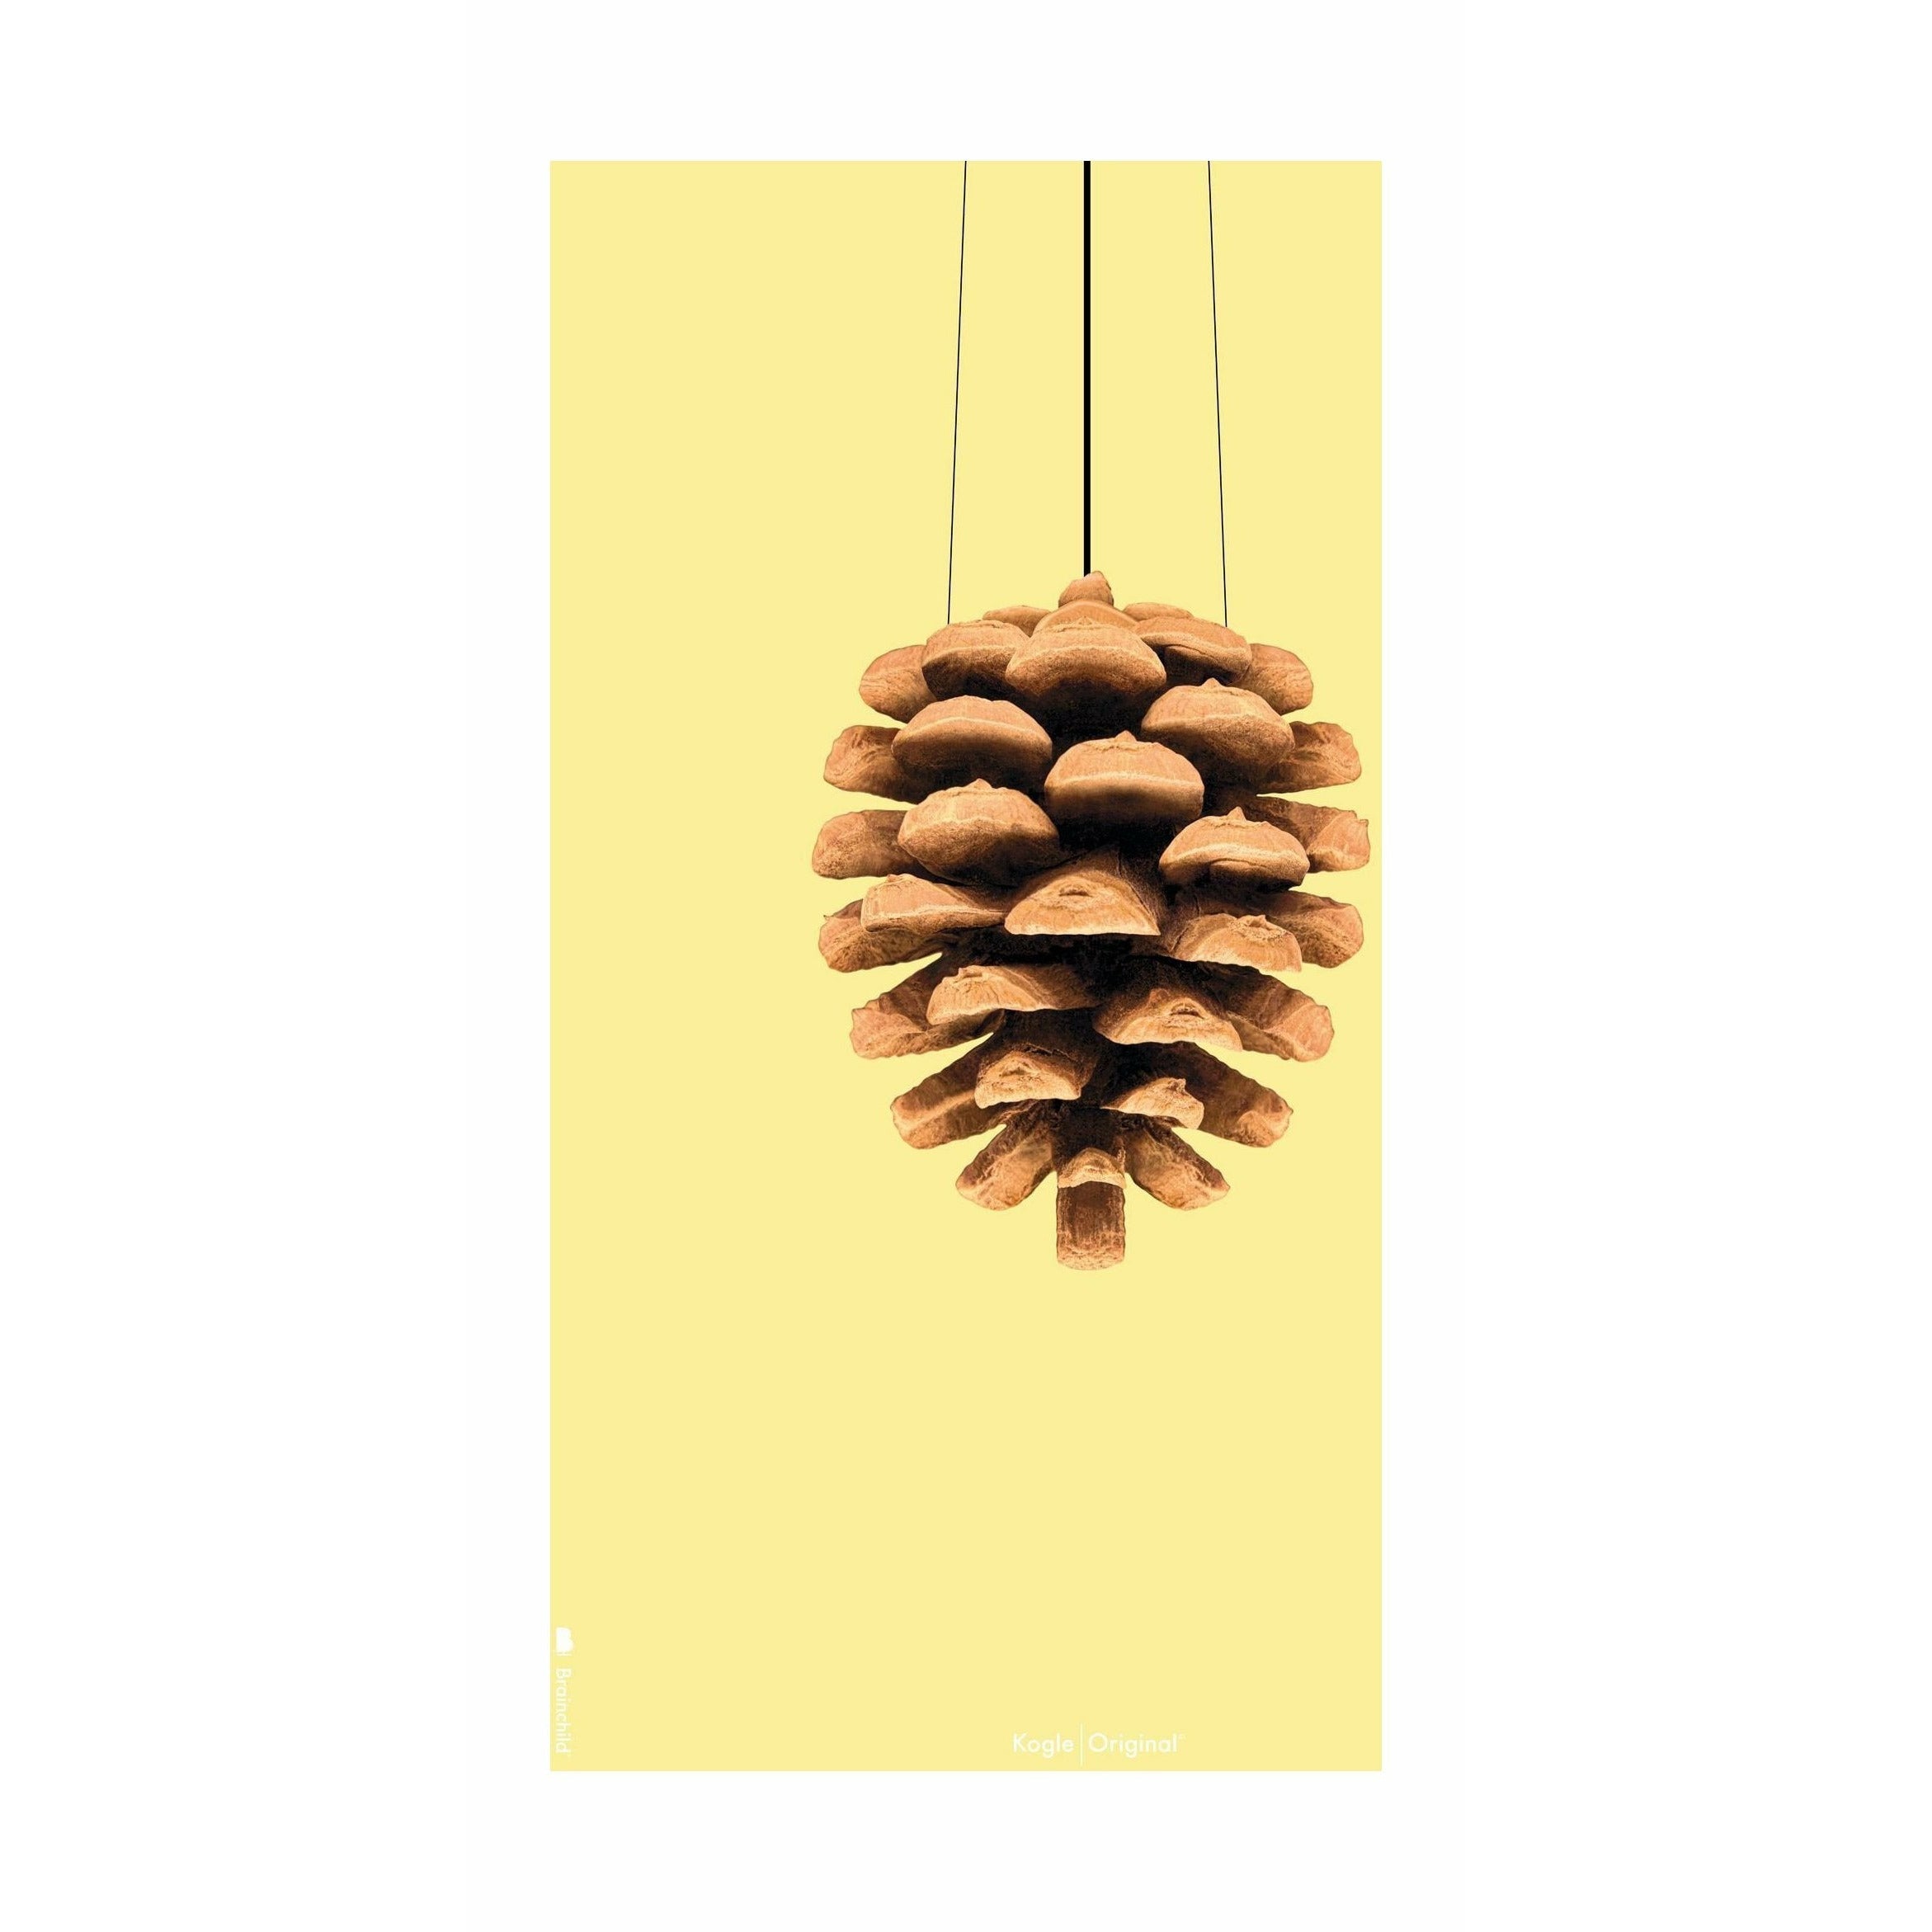 brainchild Pine Cone Classic Poster uden ramme A5, gul baggrund